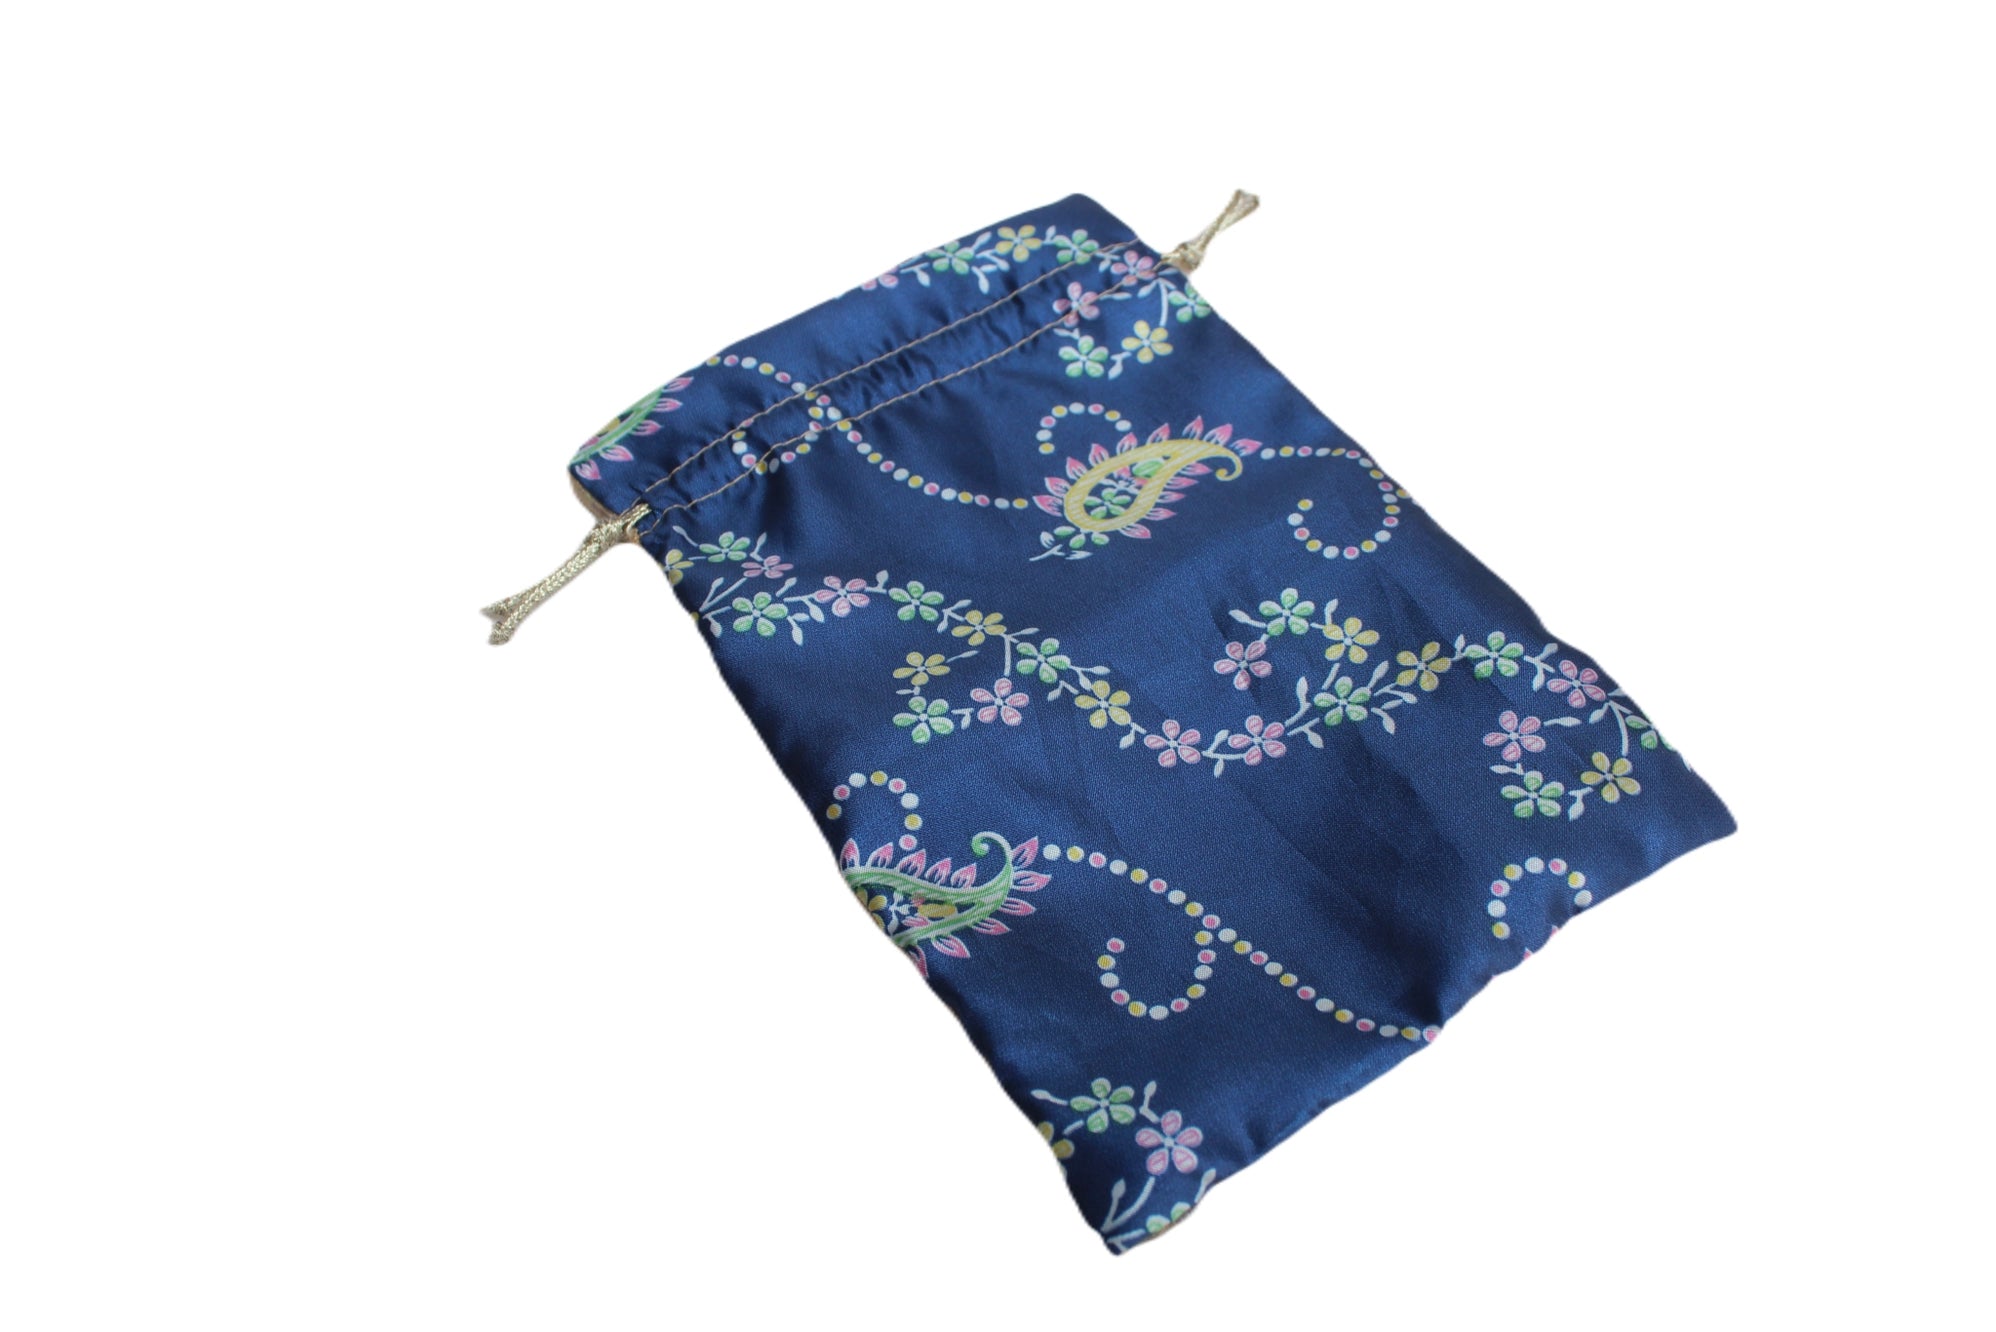 Upcycled - Sari Gift Bag